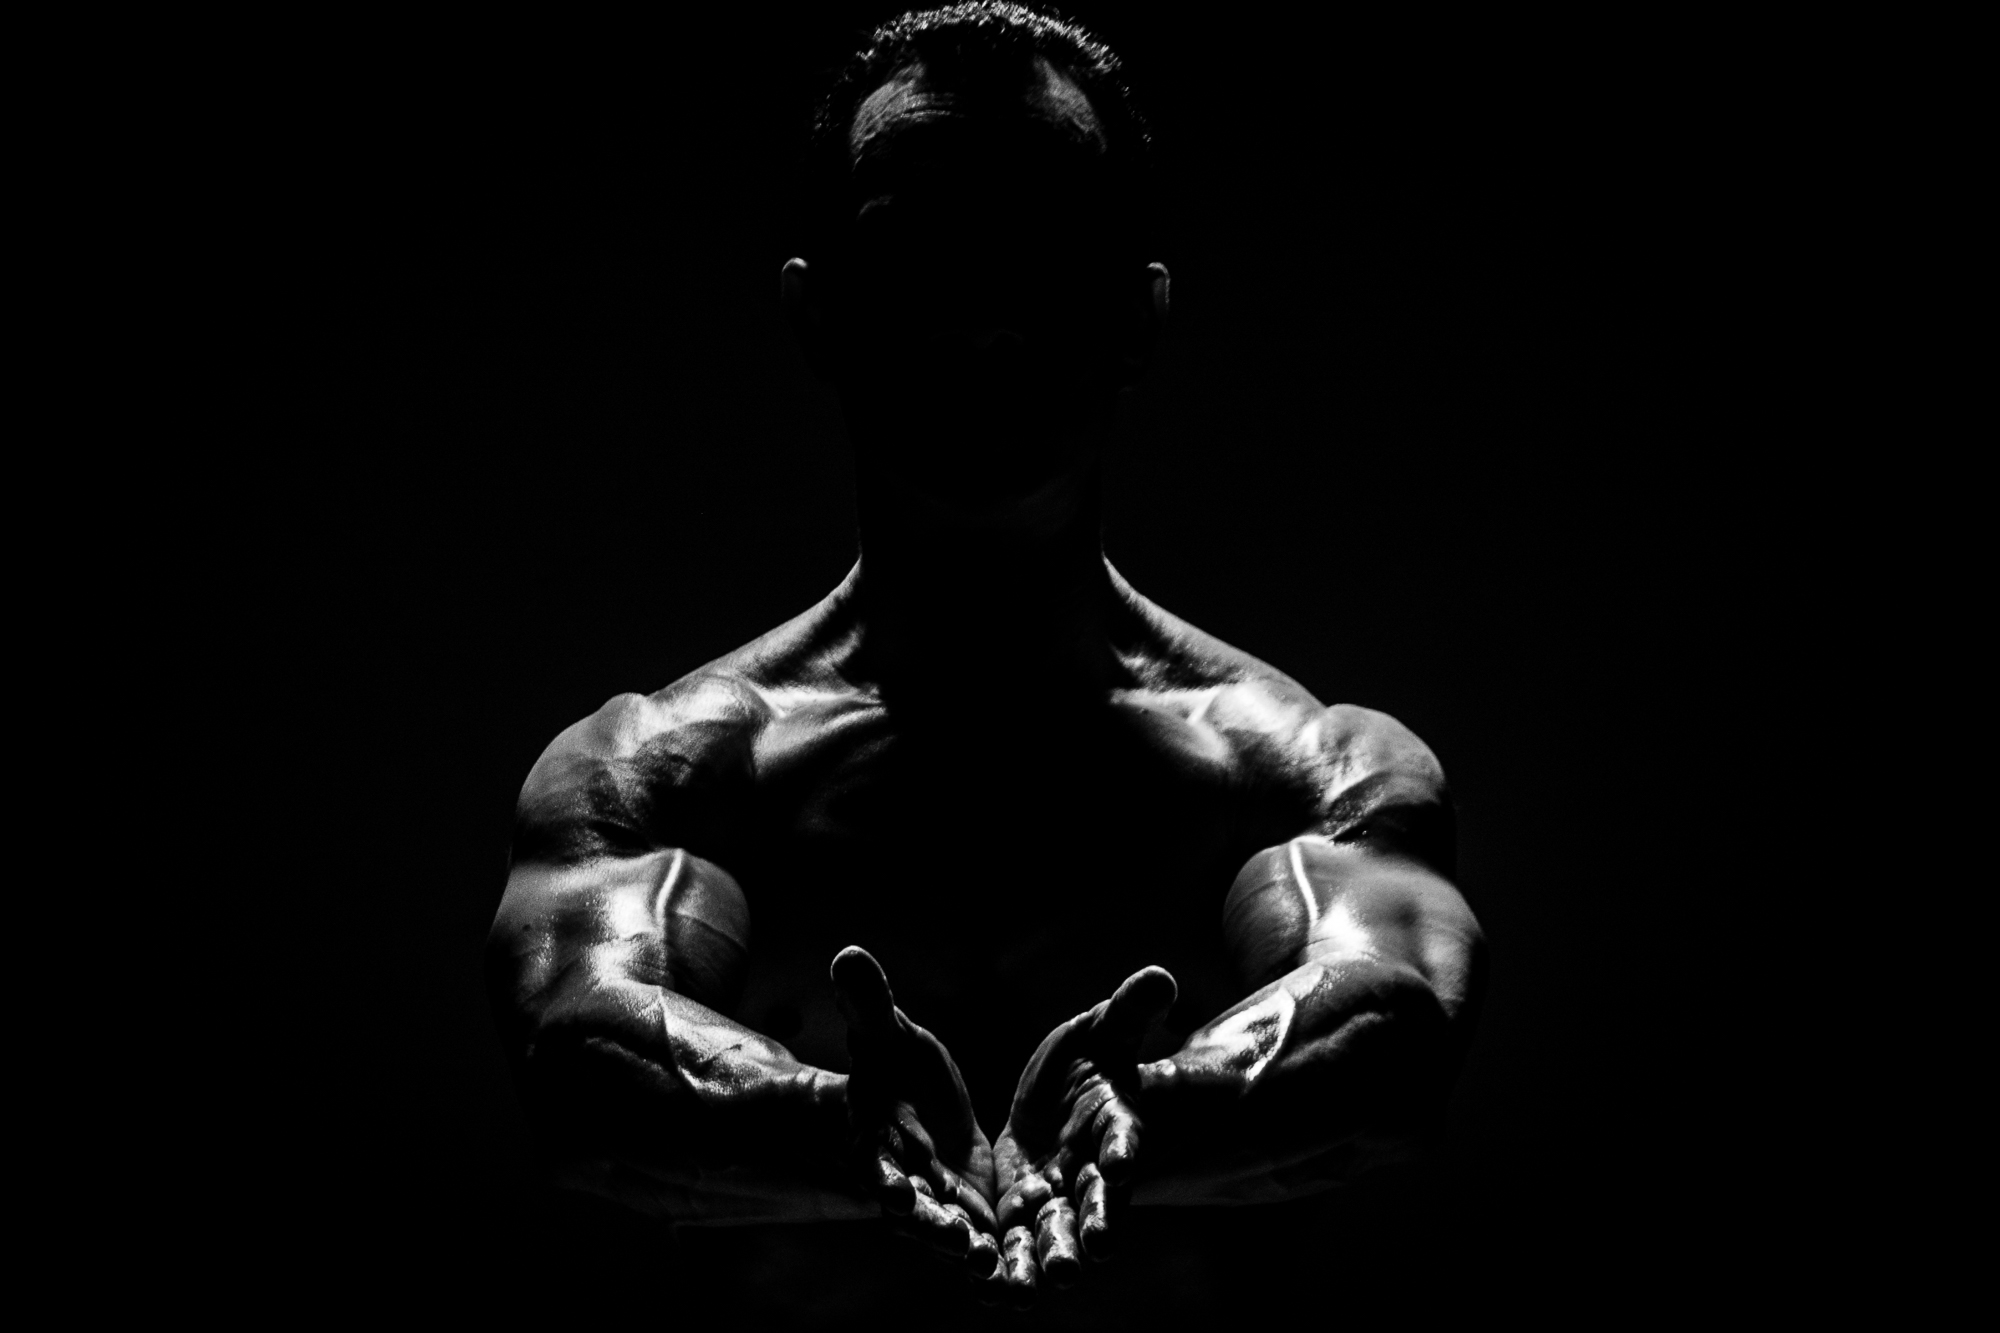 bodybuilder fitness photography copenhagen denmark